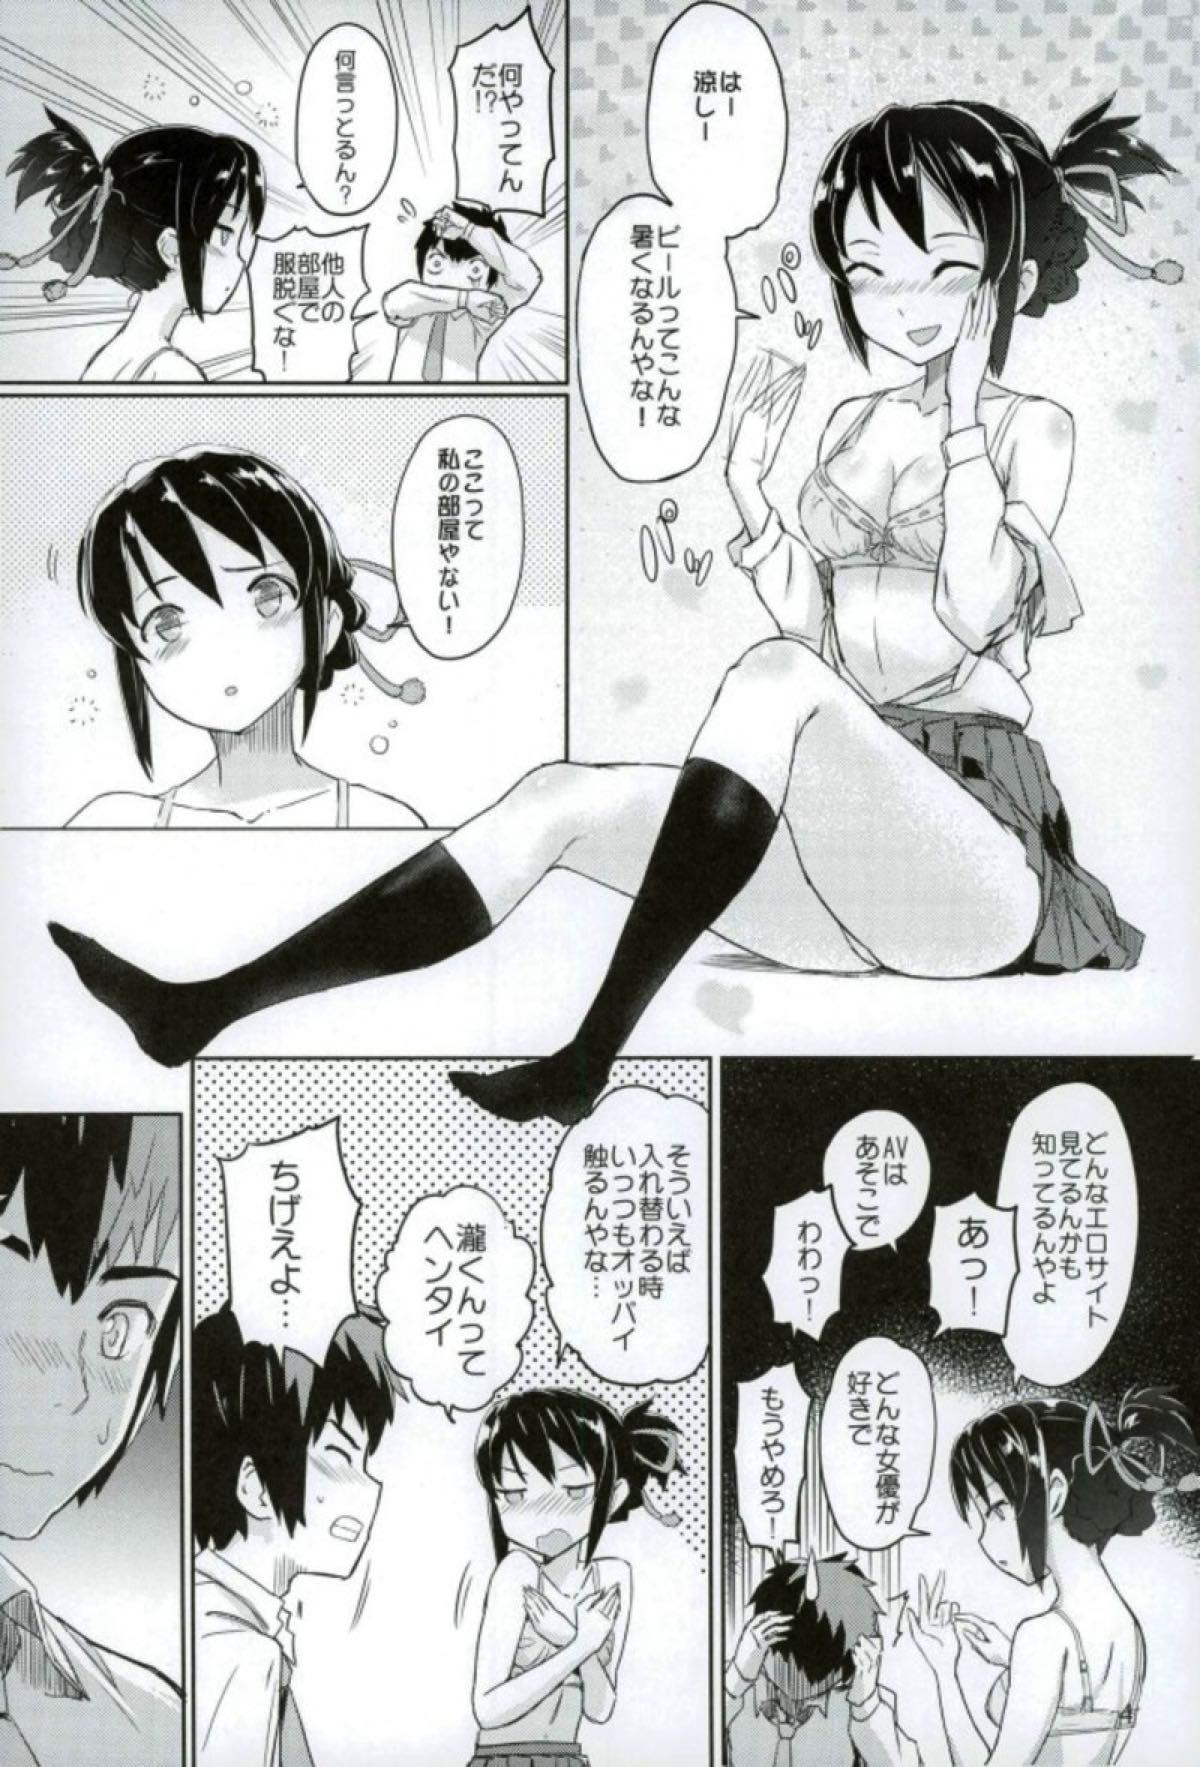 Classroom Kimi to Boku no Musubi - Kimi no na wa. Hung - Page 5